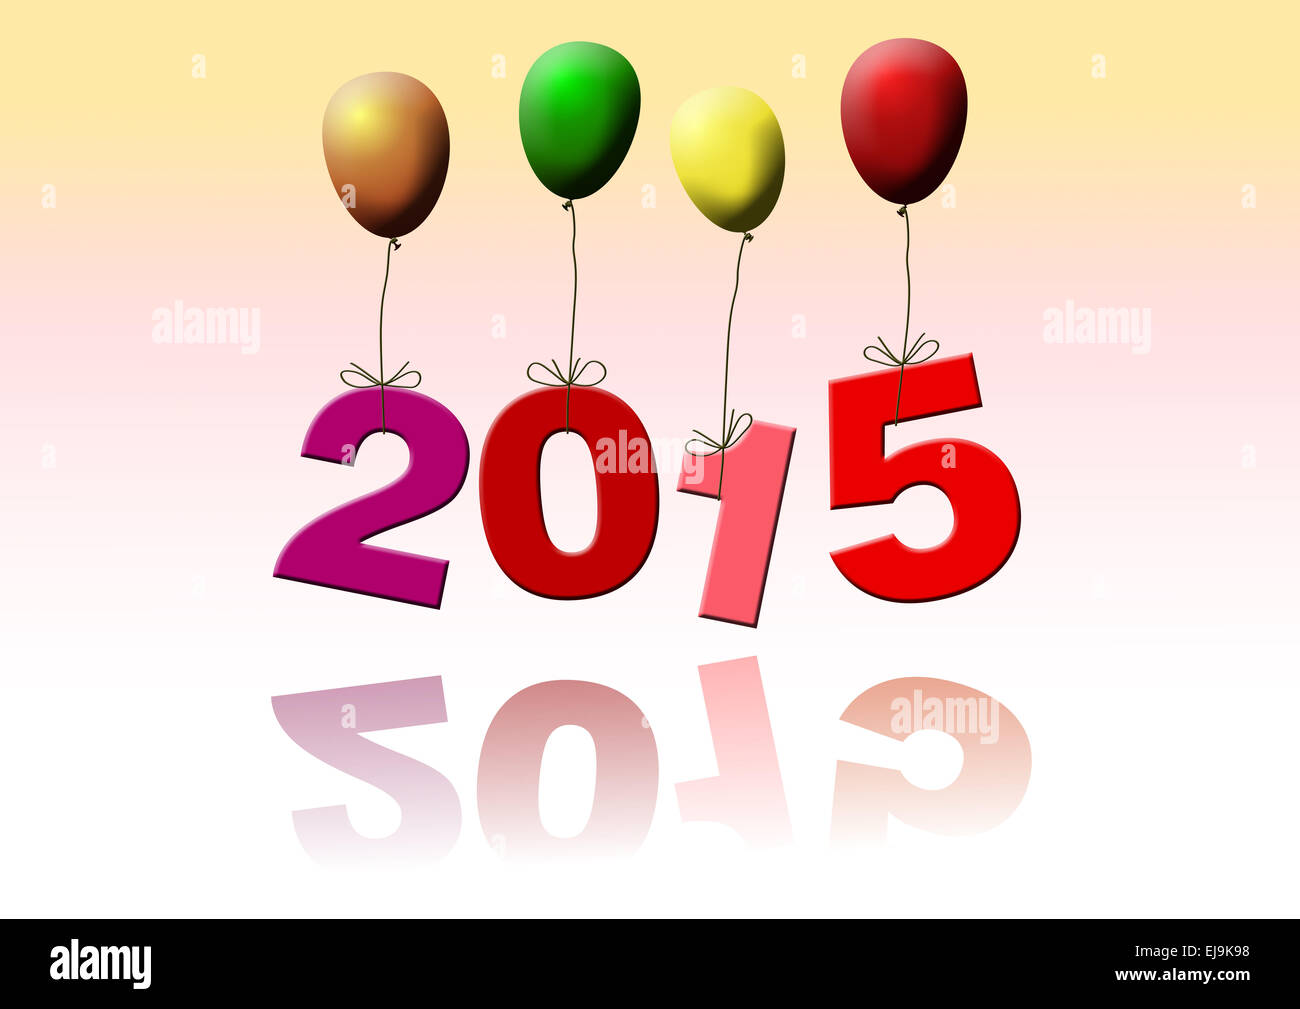 illustration of year 2015 on balloons Stock Photo